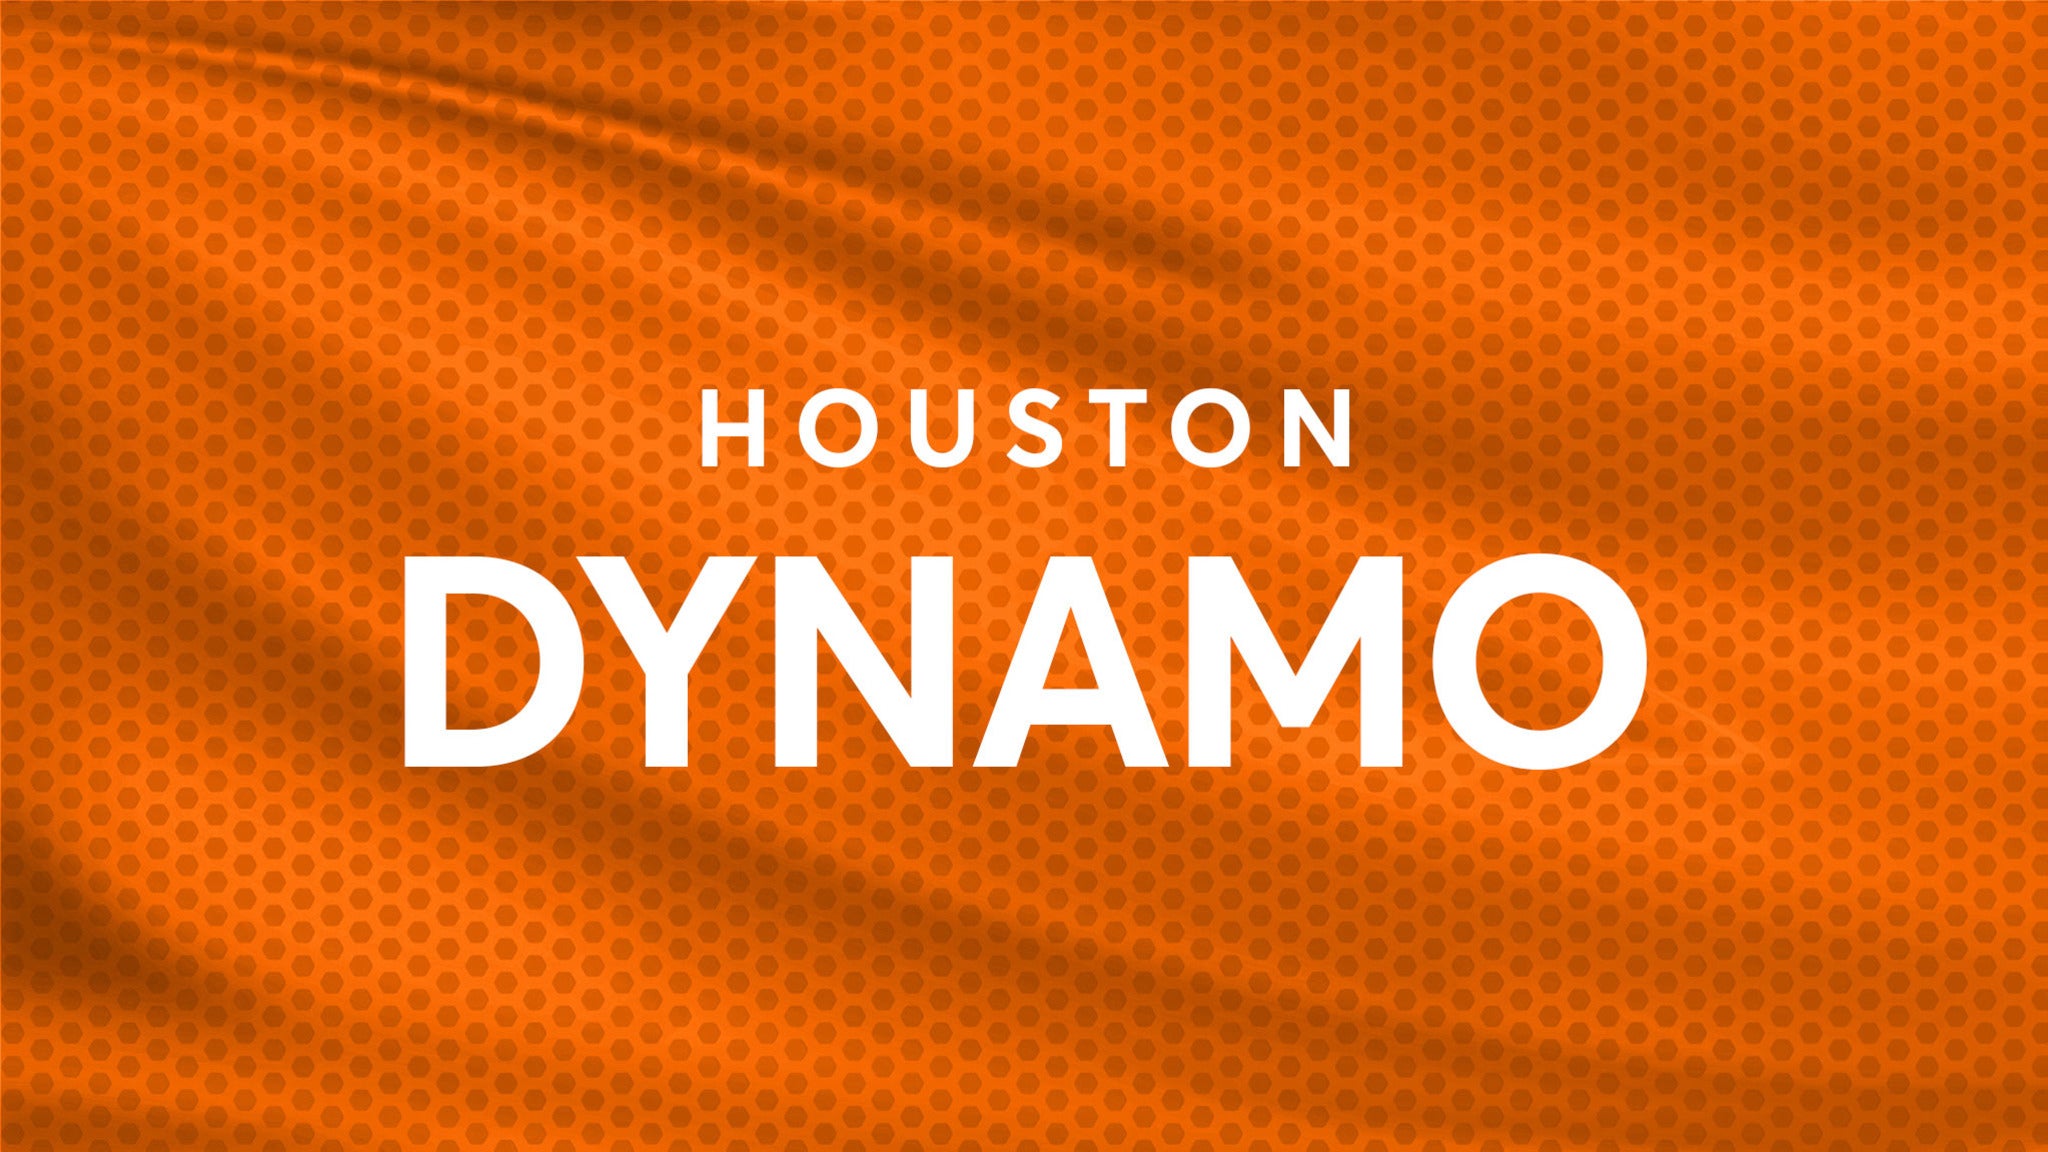 Houston Dynamo vs. Charlotte FC